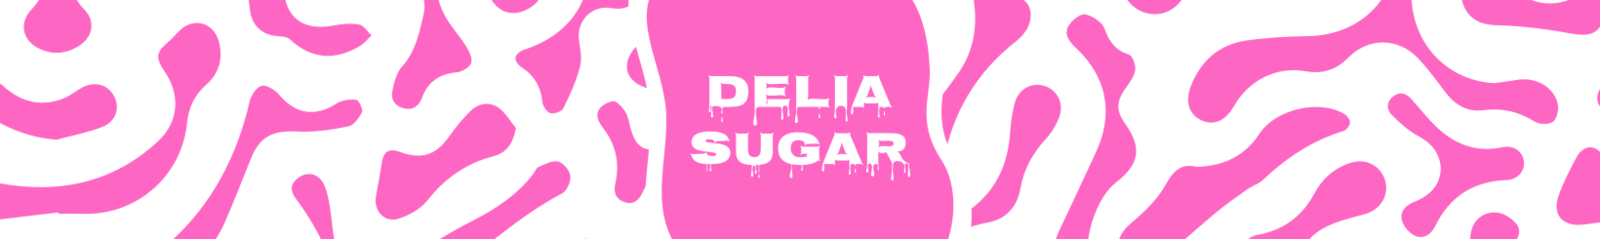 Delia Sugar